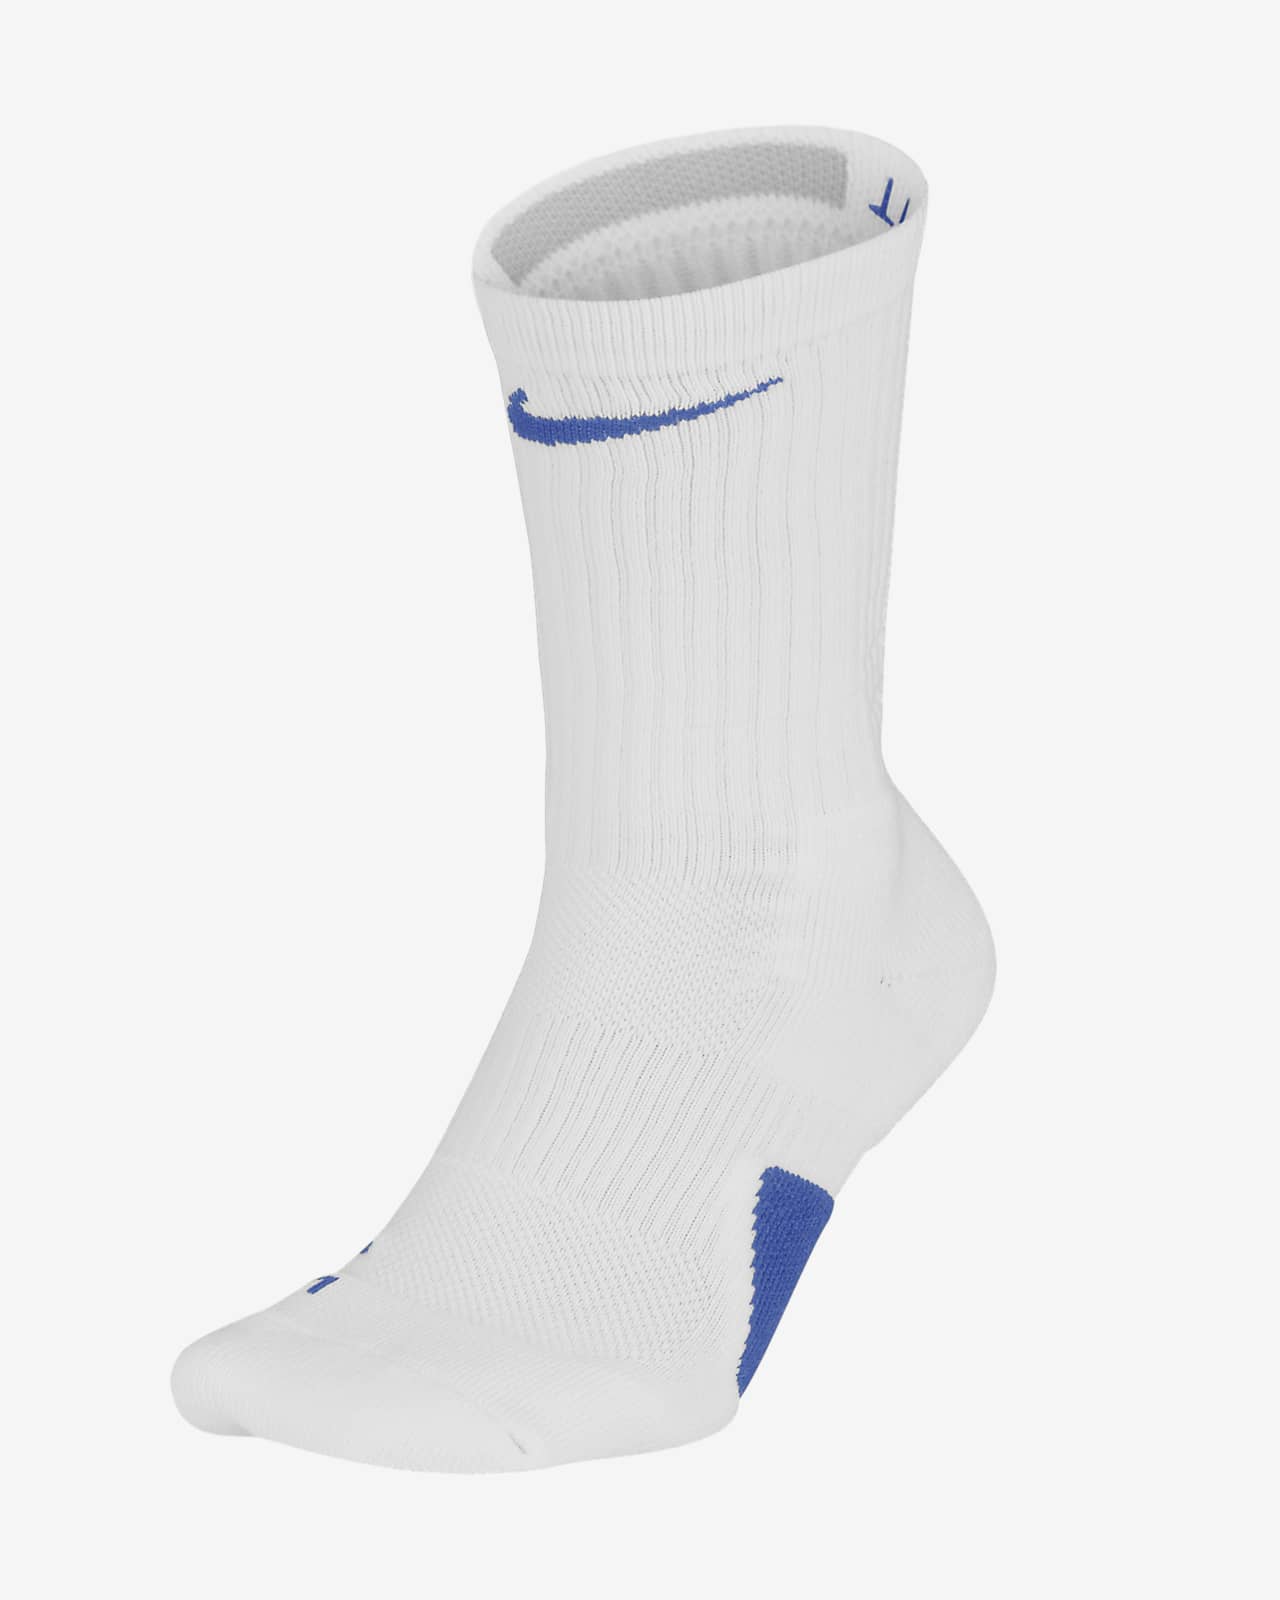 Nike Elite Crew Basketball Socks- Basketball Store